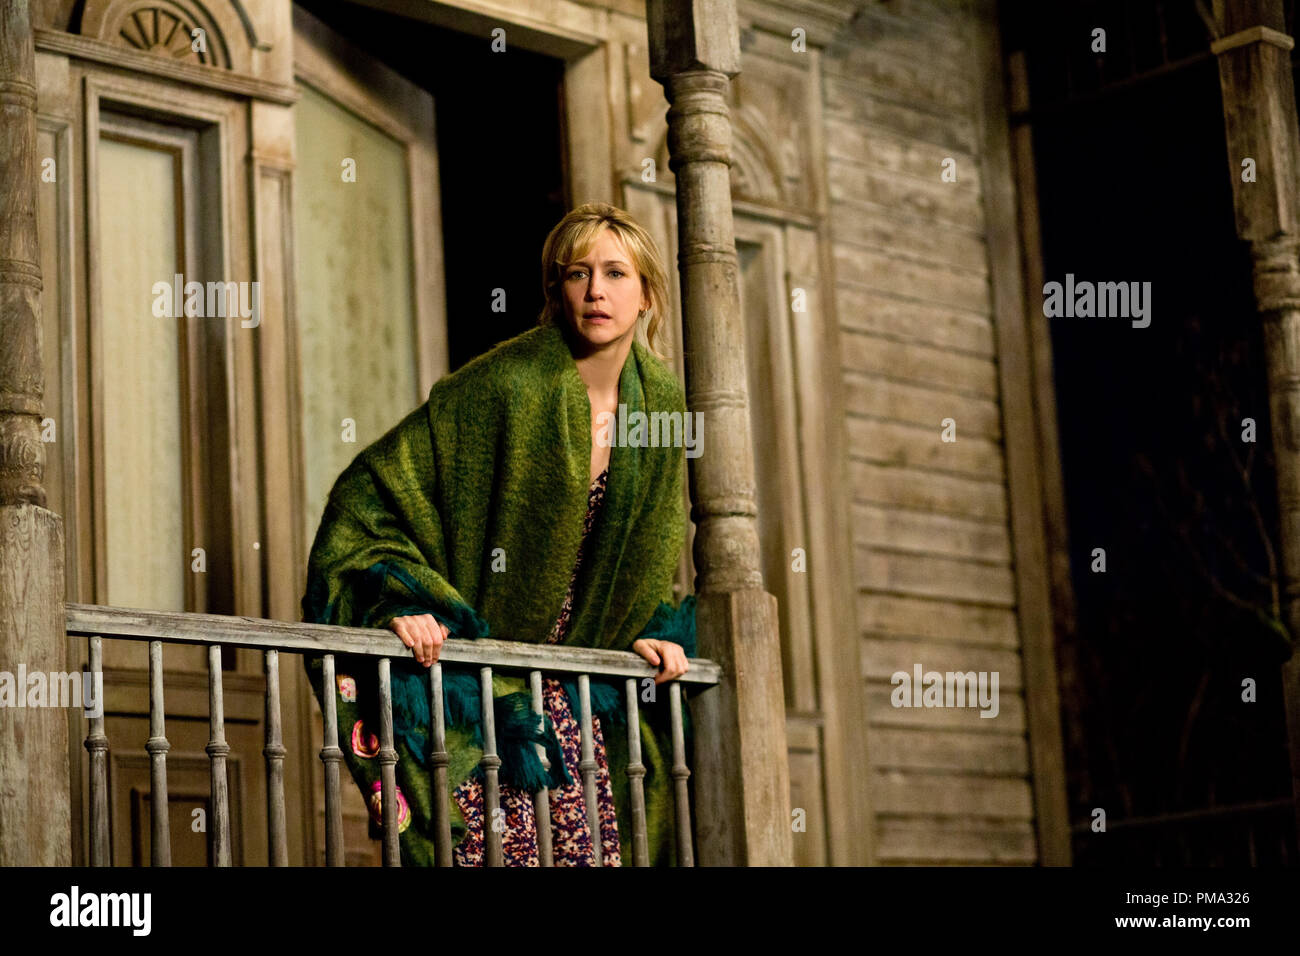 'Bates Motel' Episode 106. Vera Farmiga as Norma Bates. Stock Photo